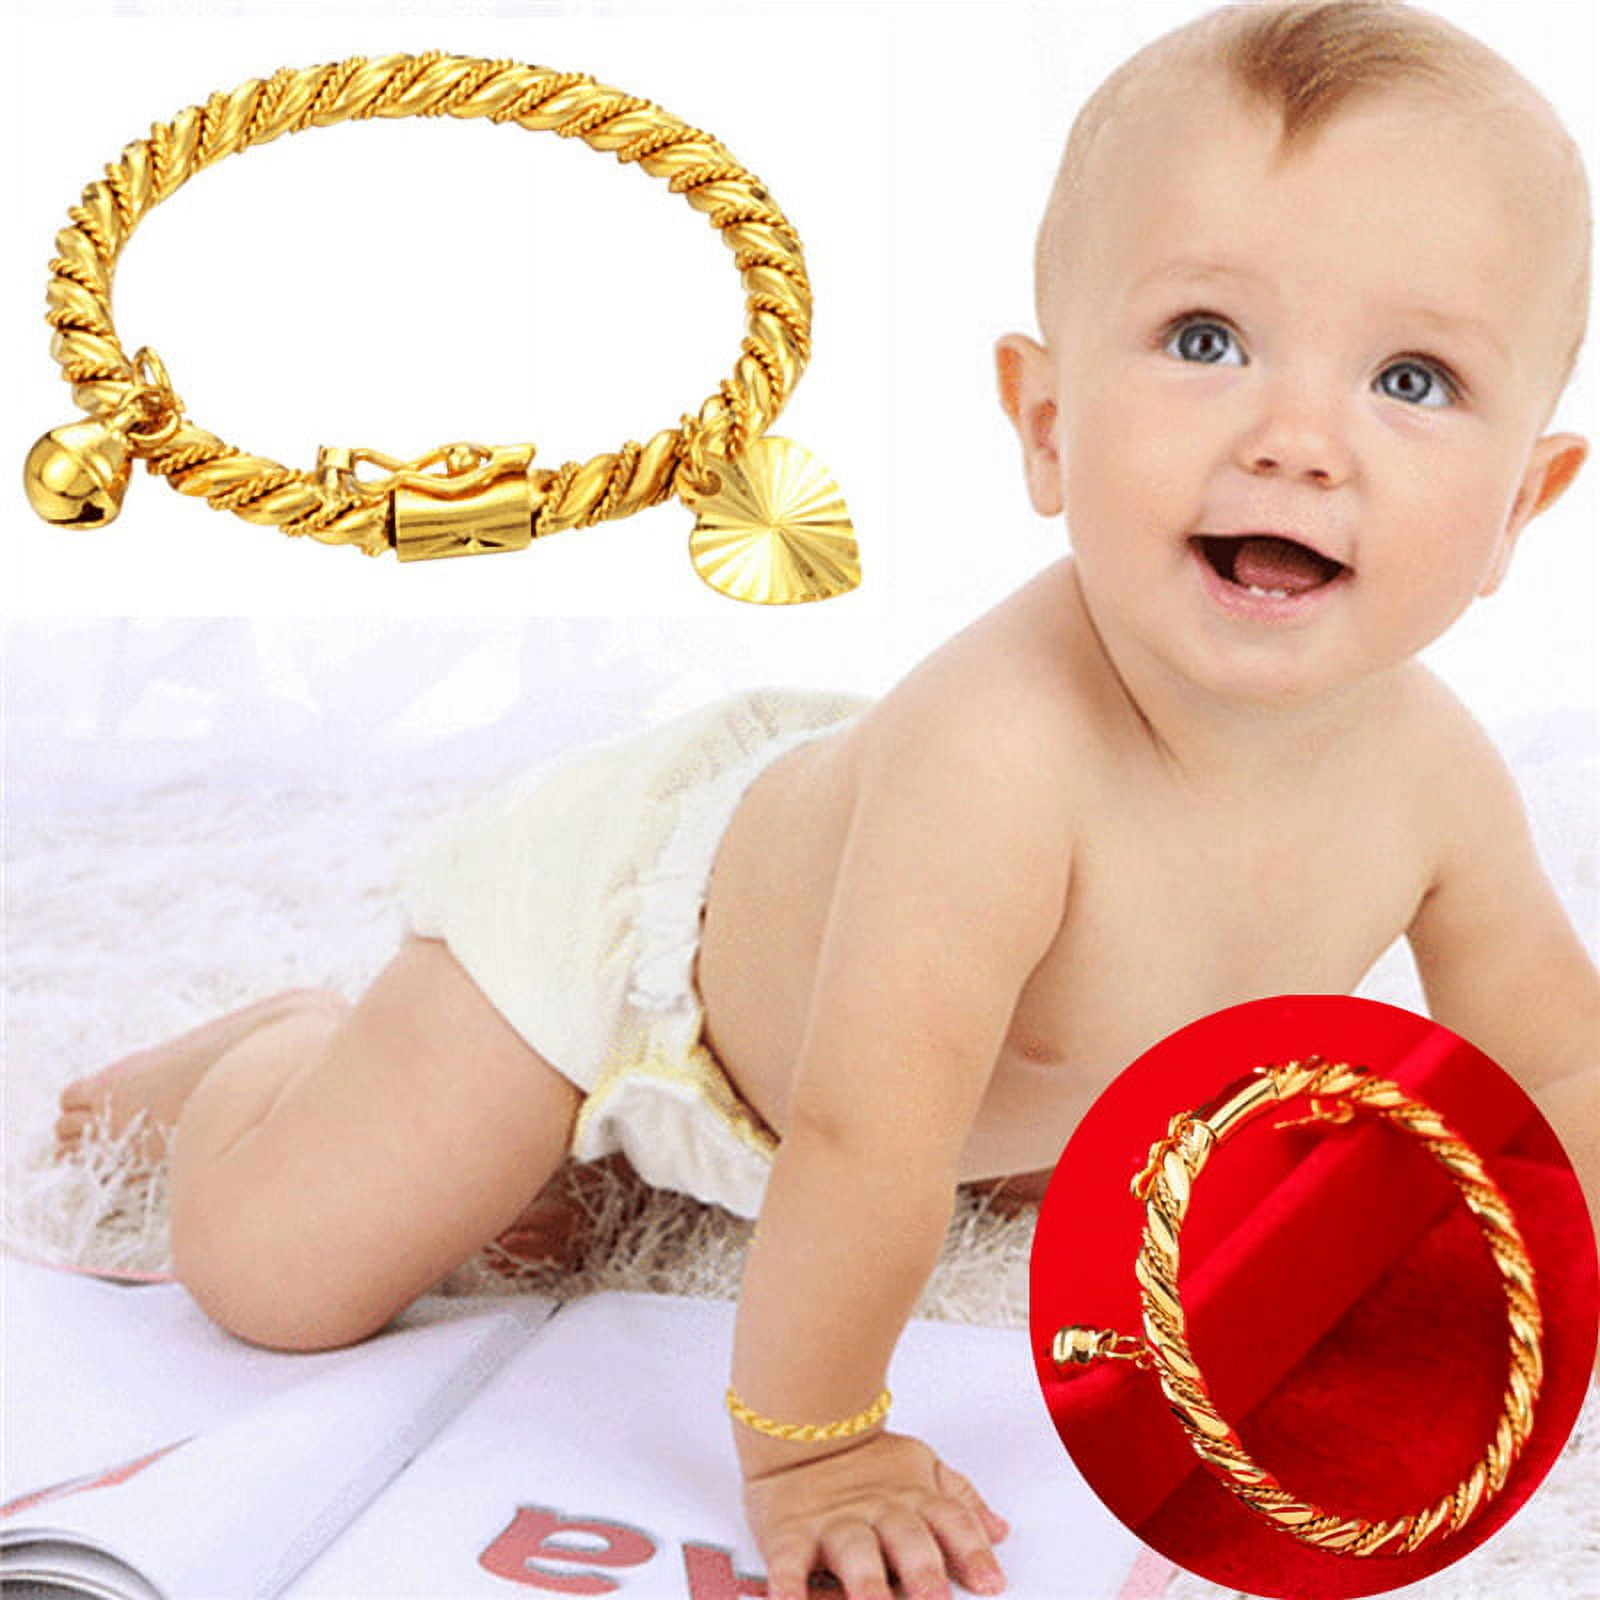 Baby Bracelet, ID Bracelet, Gold Baby Bracelet, Gold Bracelet, 14K Gold  Filled Bracelet, Baby Boy Bracelet, Baby Name Bracelet - Etsy